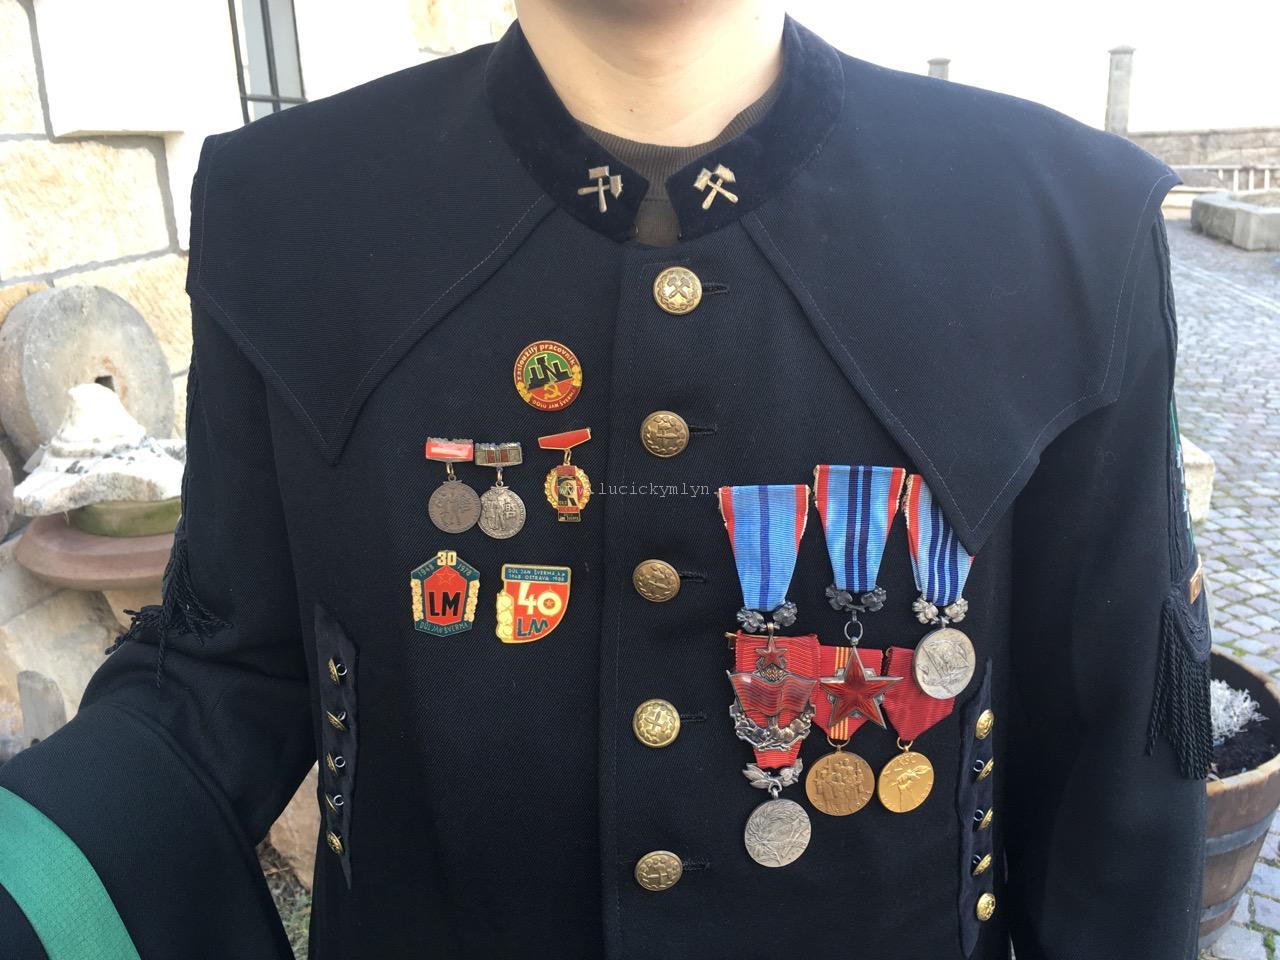 Slavnostní hornická (havířská) uniforma s řády a vyznamenáními